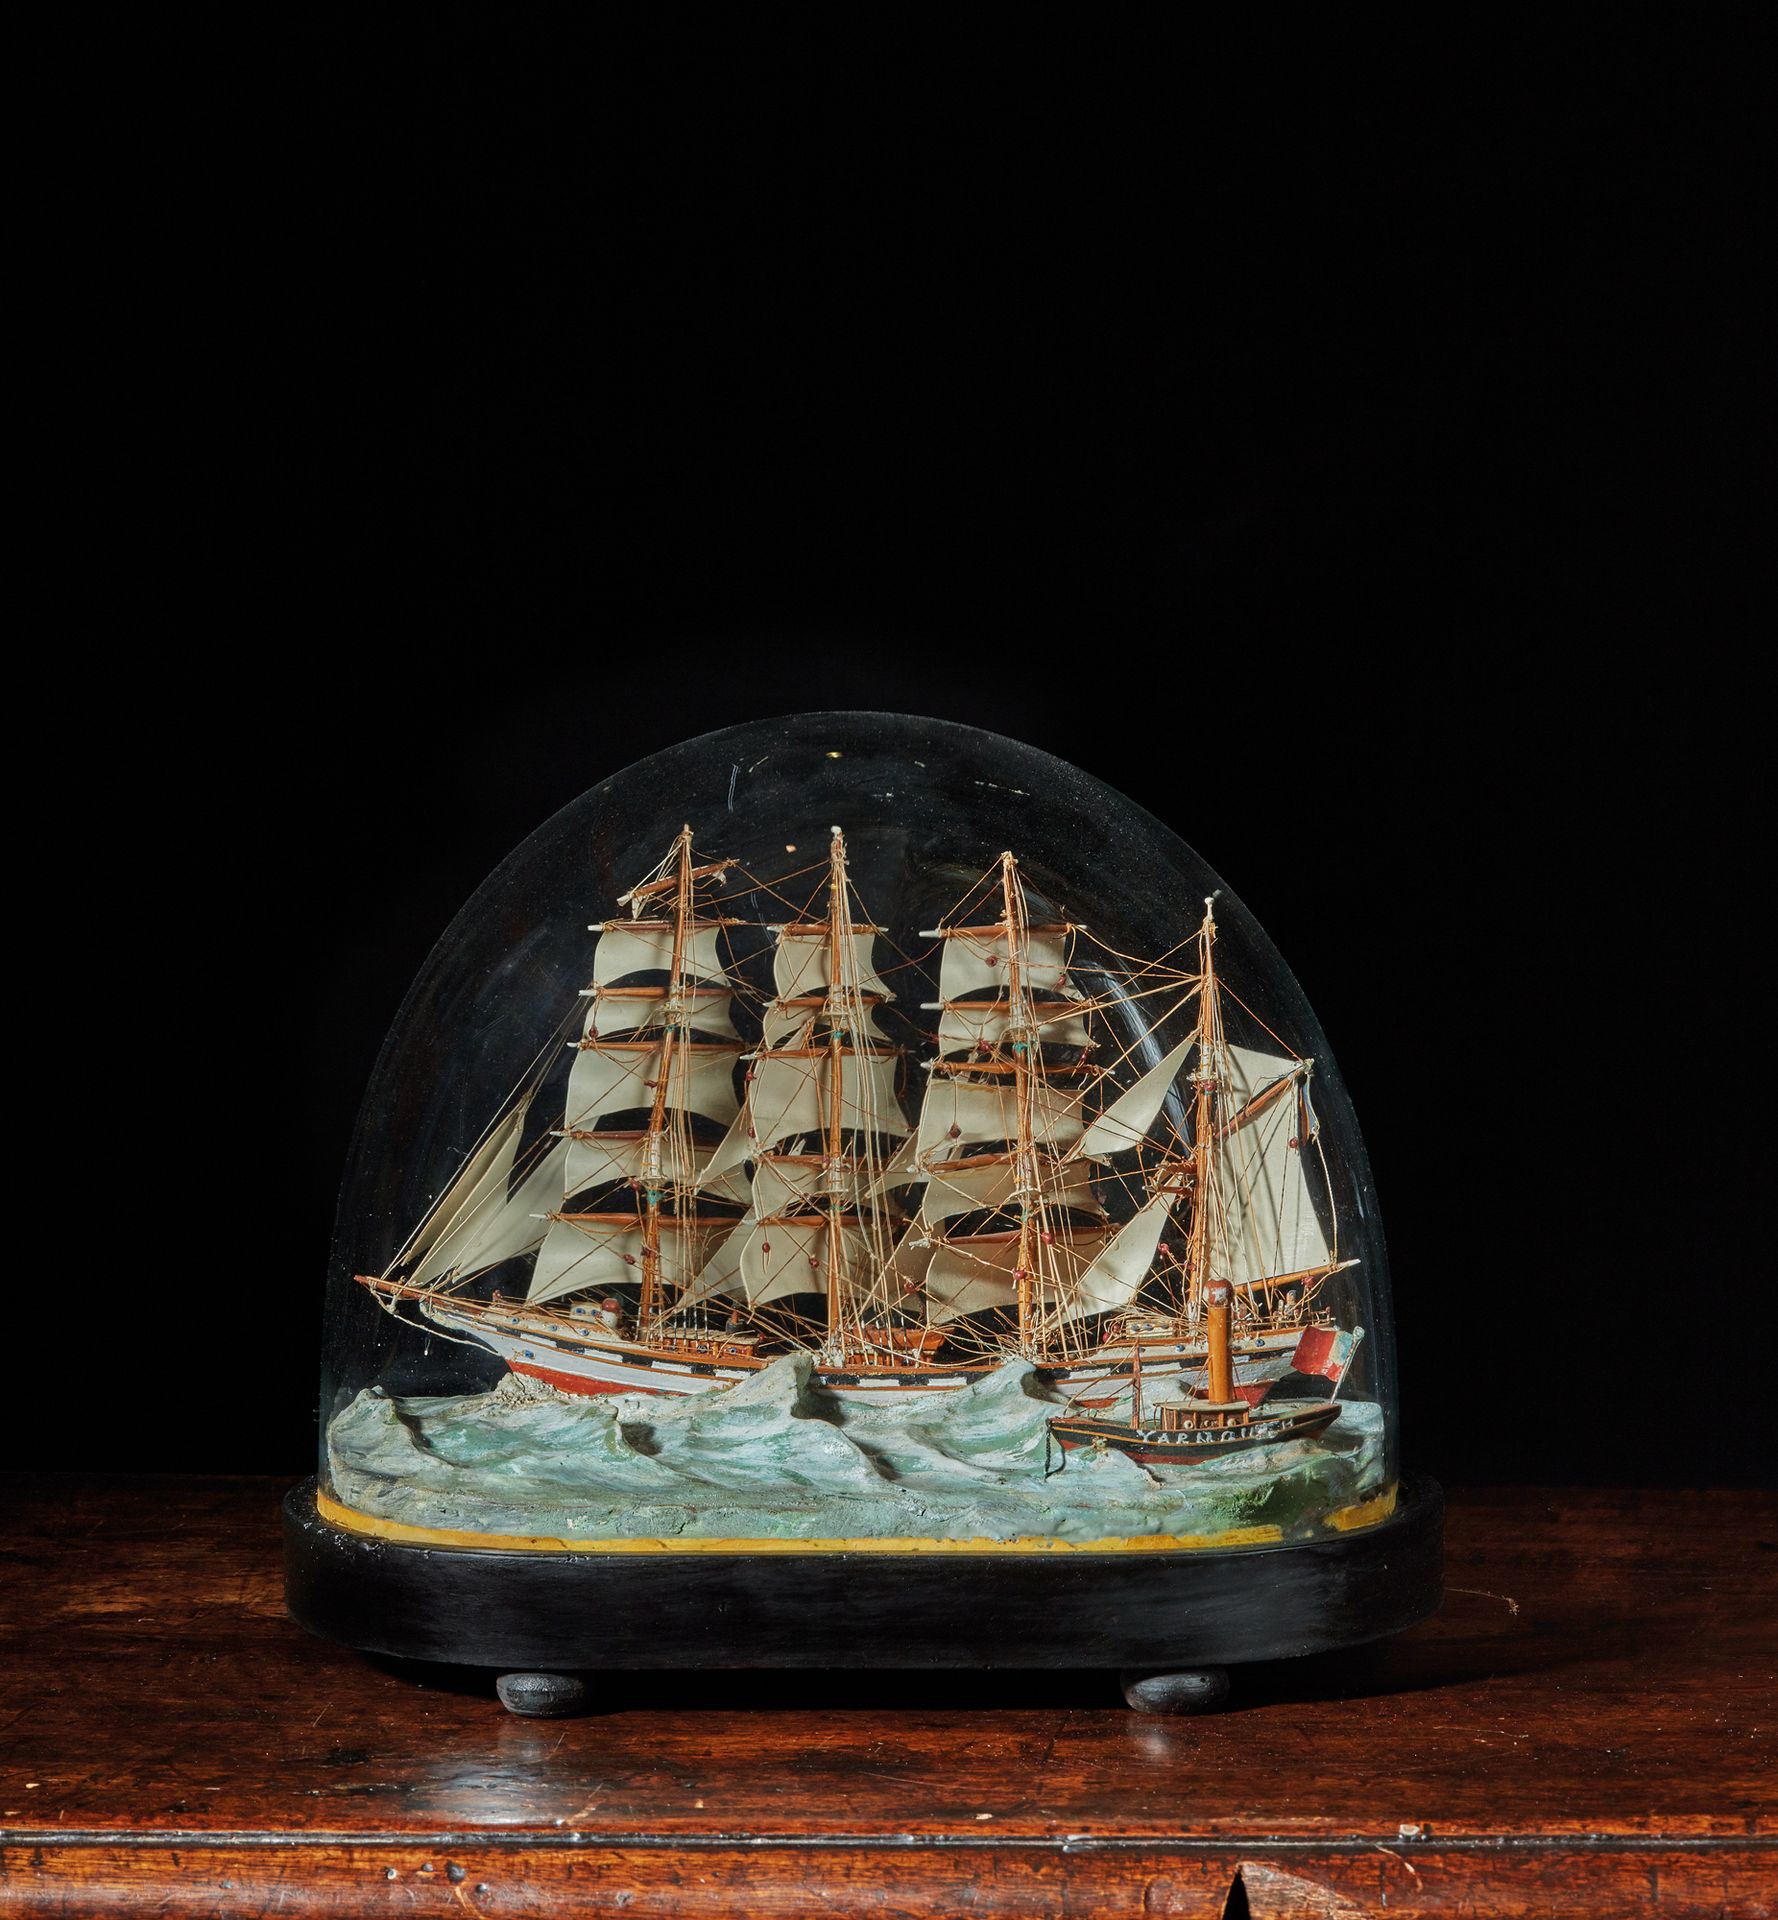 Null 迪奥拉玛
Cie公司的四桅帆船模型
波德士号将所有的船帆都驶出了雅姆士的灯塔船（加拿大新斯科舍省）。
呈现在一个涂有油灰的海面上和一个保护性的玻璃球下&hellip;